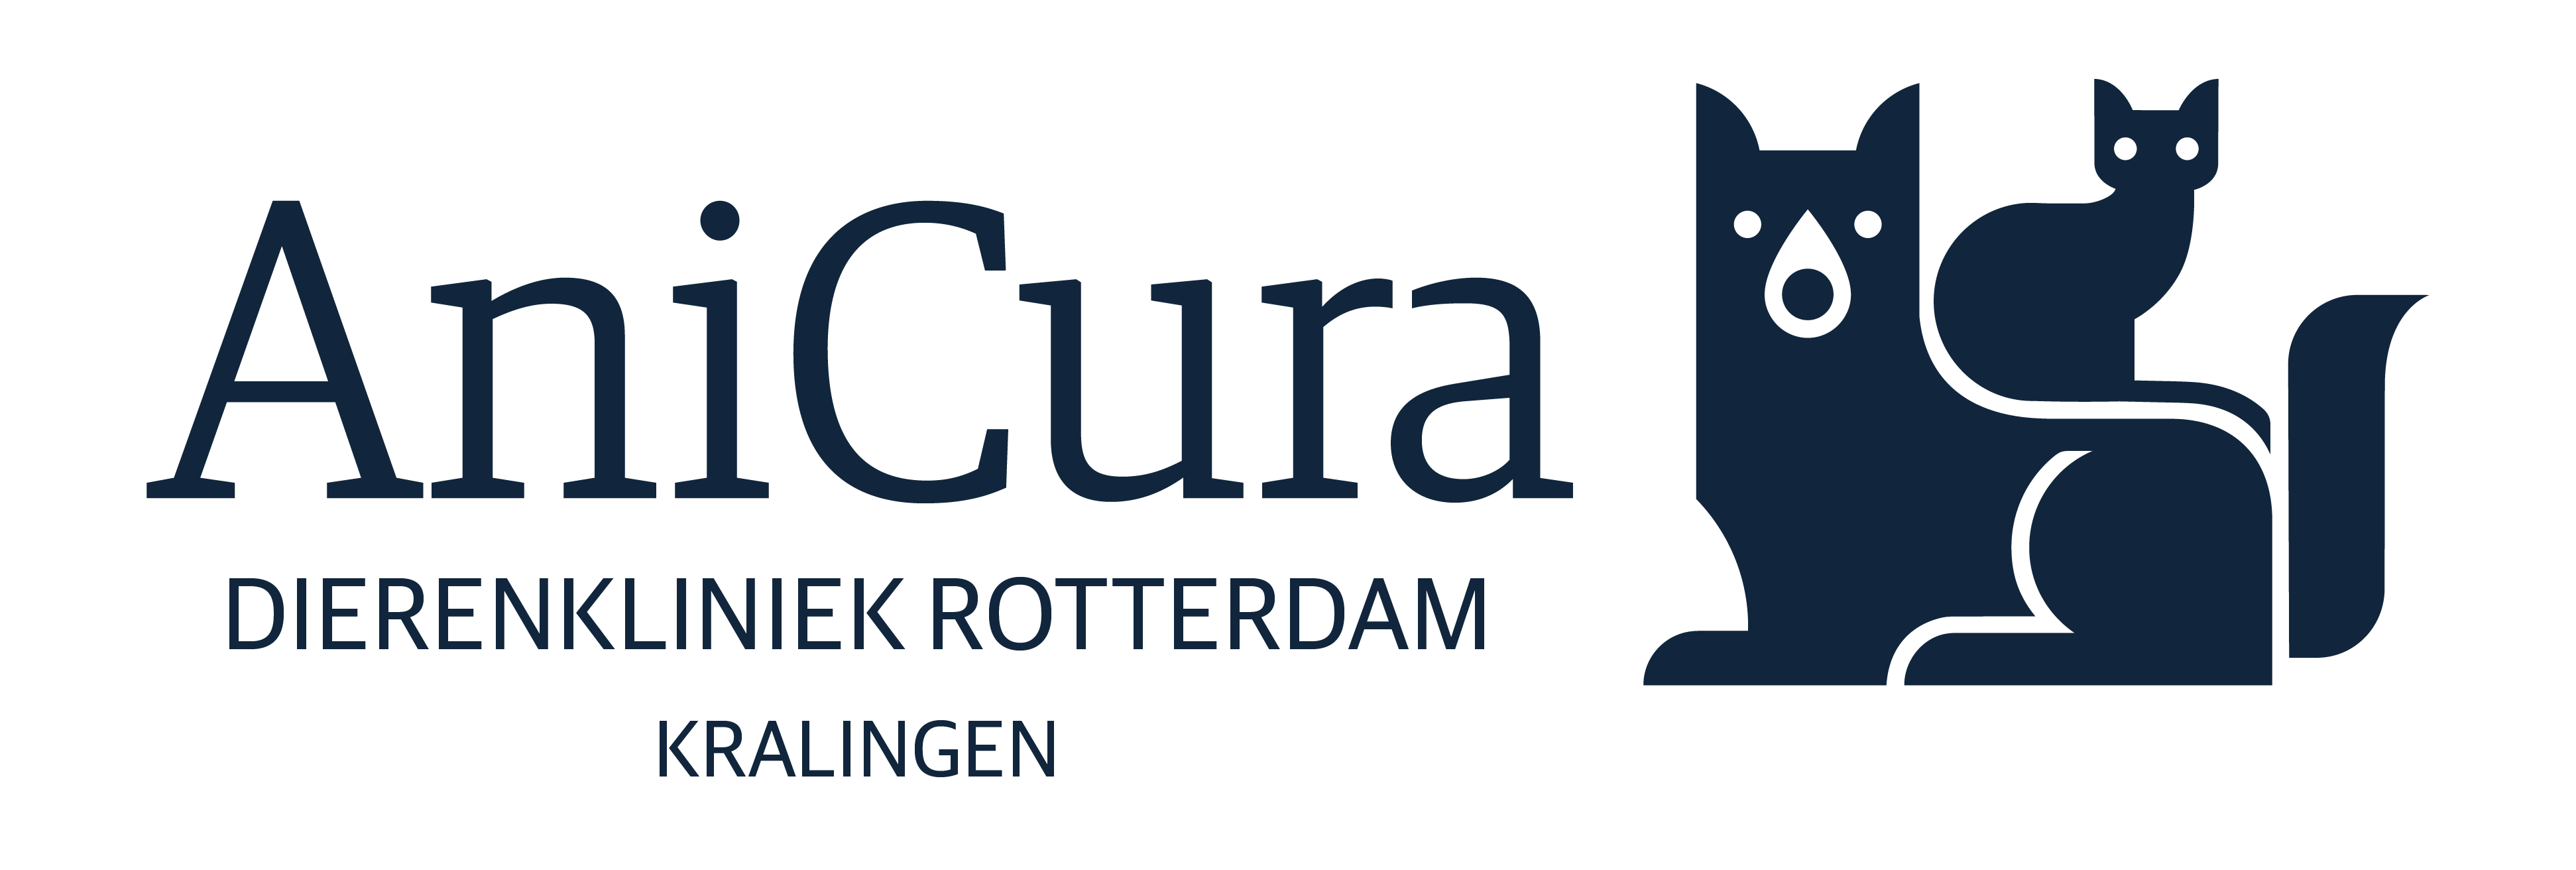 AniCura Dierenkliniek Rotterdam - Kralingen logo